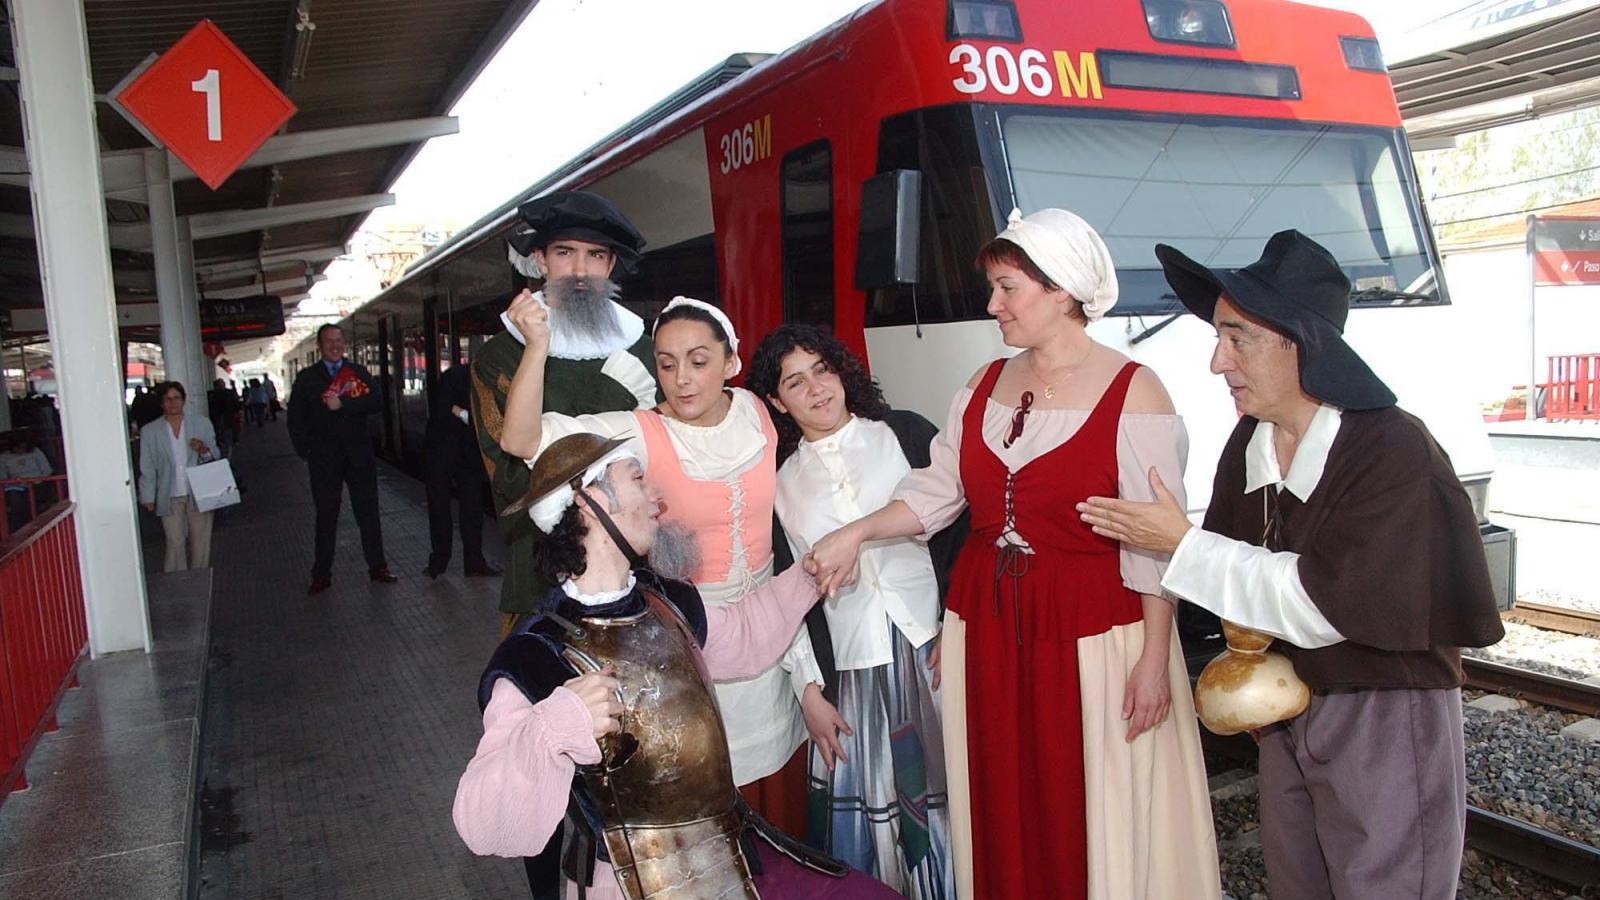 El Tren de Cervantes vuelve con sus turistas a Alcalá de Henares